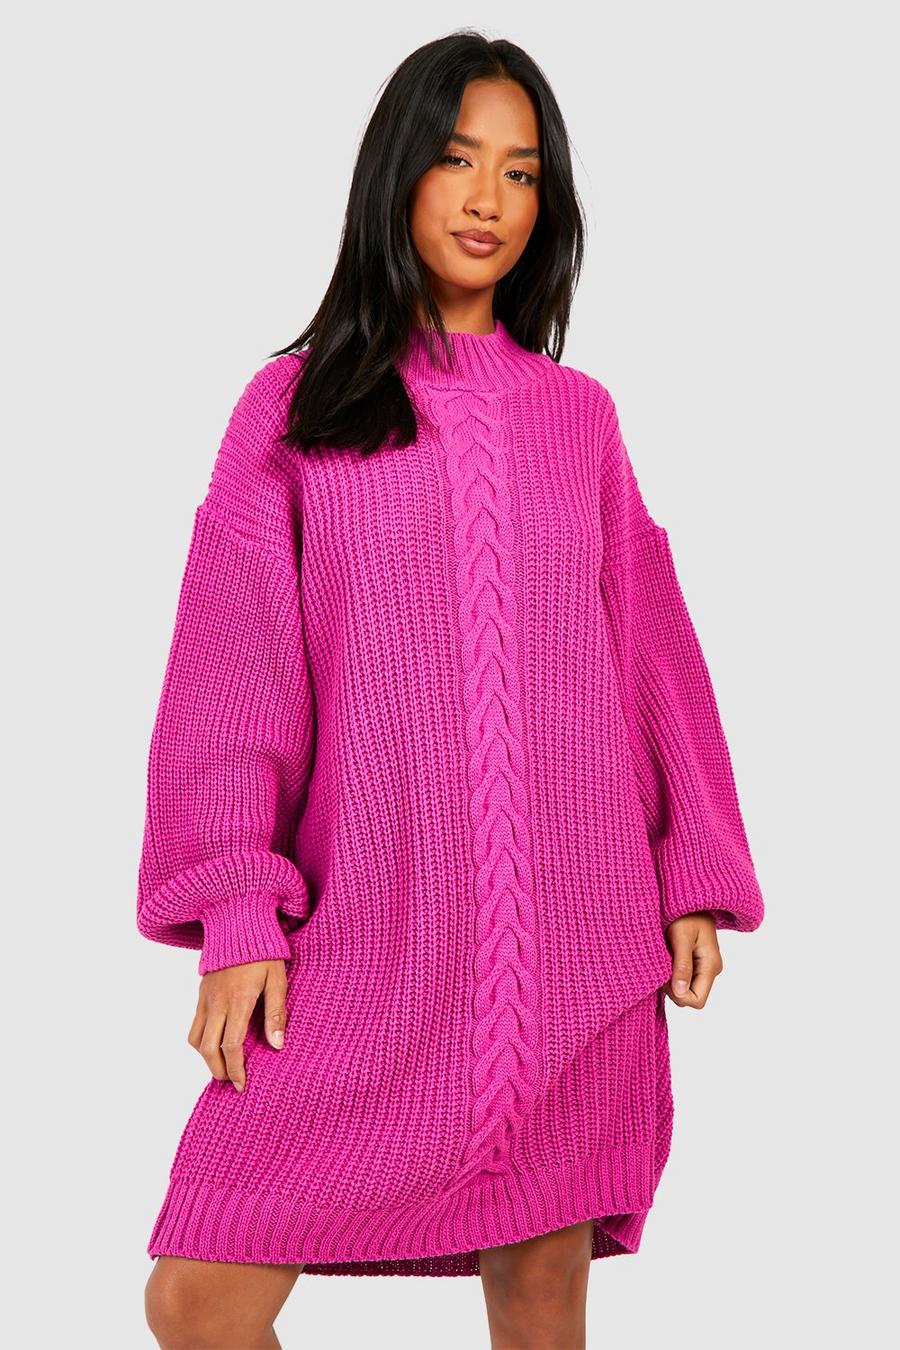 Petite - Robe courte en maille torsadée, Hot pink image number 1